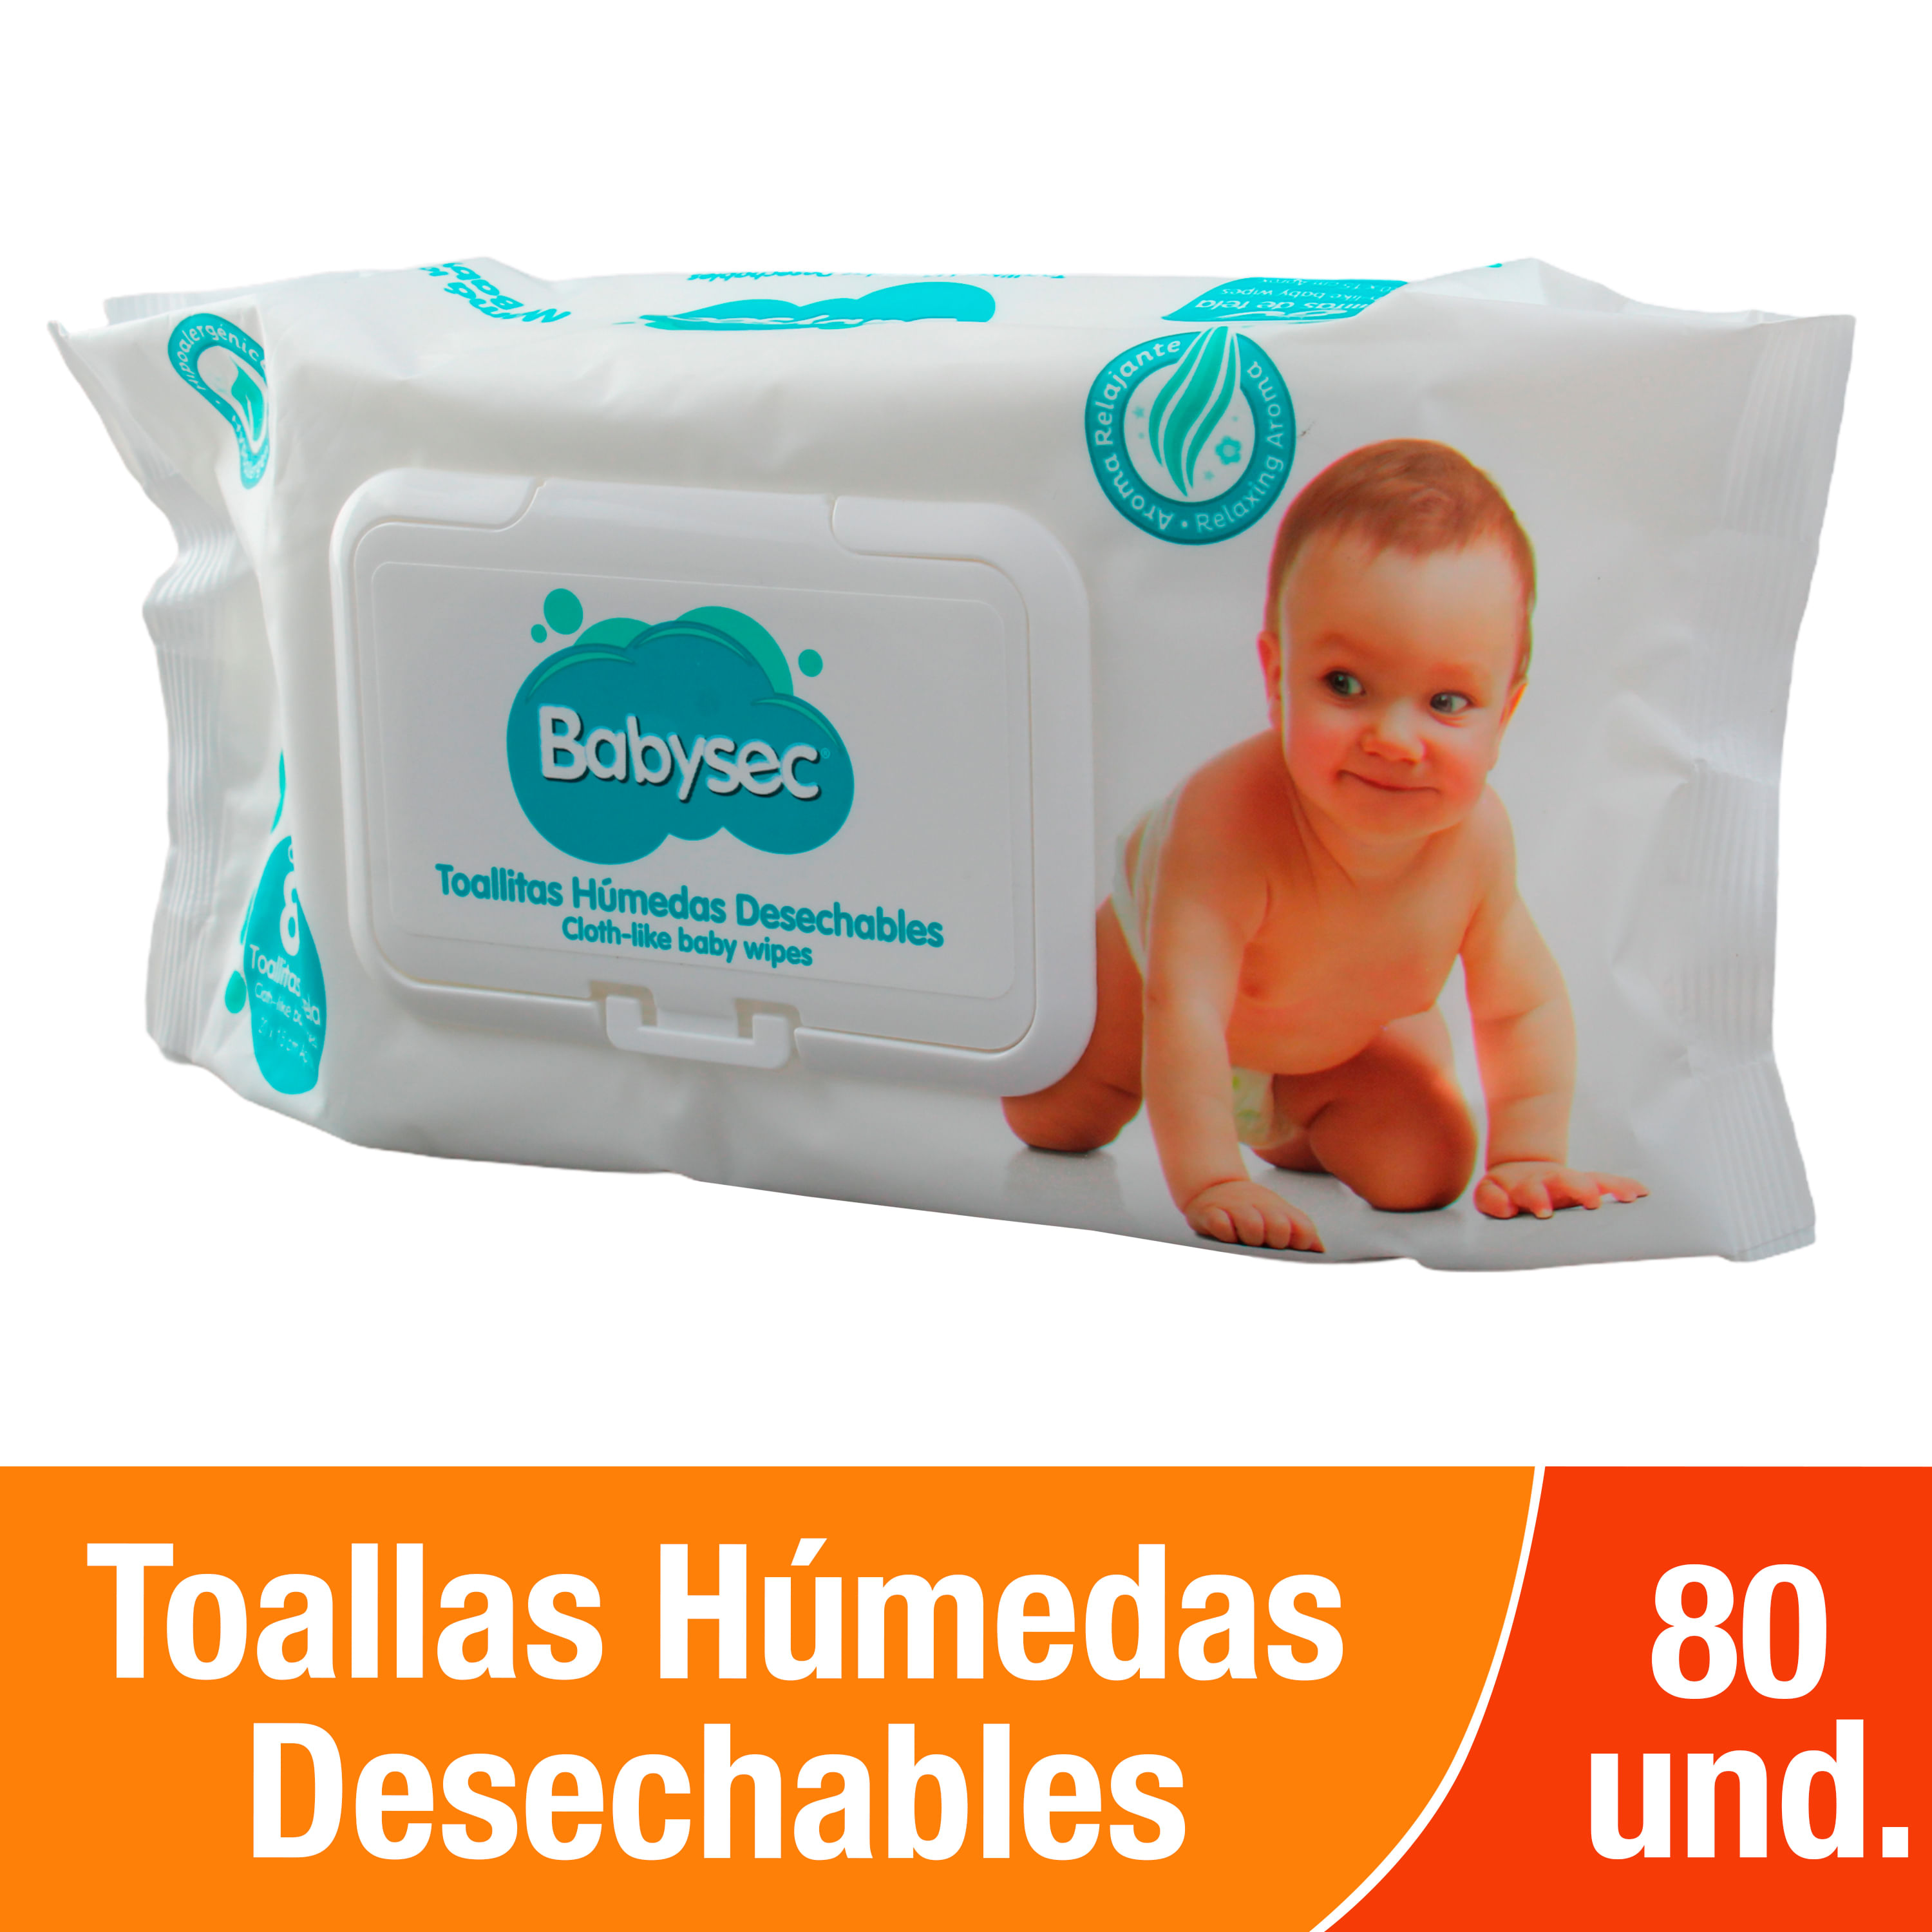 Dollarcity Guatemala - Adquiere tu cambiador desechable Babysec, ideales  para proteger la piel de tu bebé y evitar infecciones en la piel de tu  pequeño.